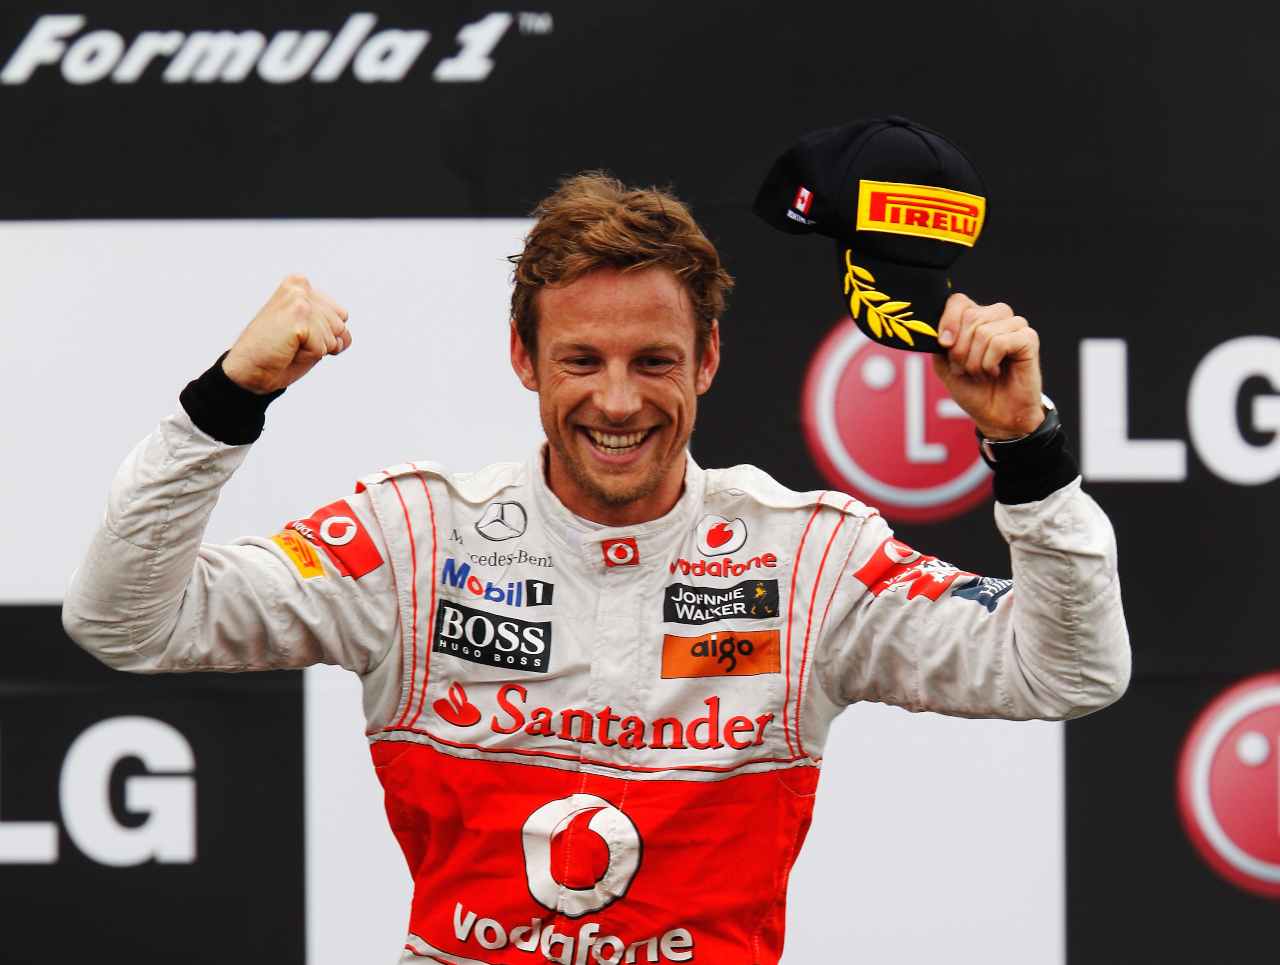 Jenson Button, i grandi momenti in Formula 1